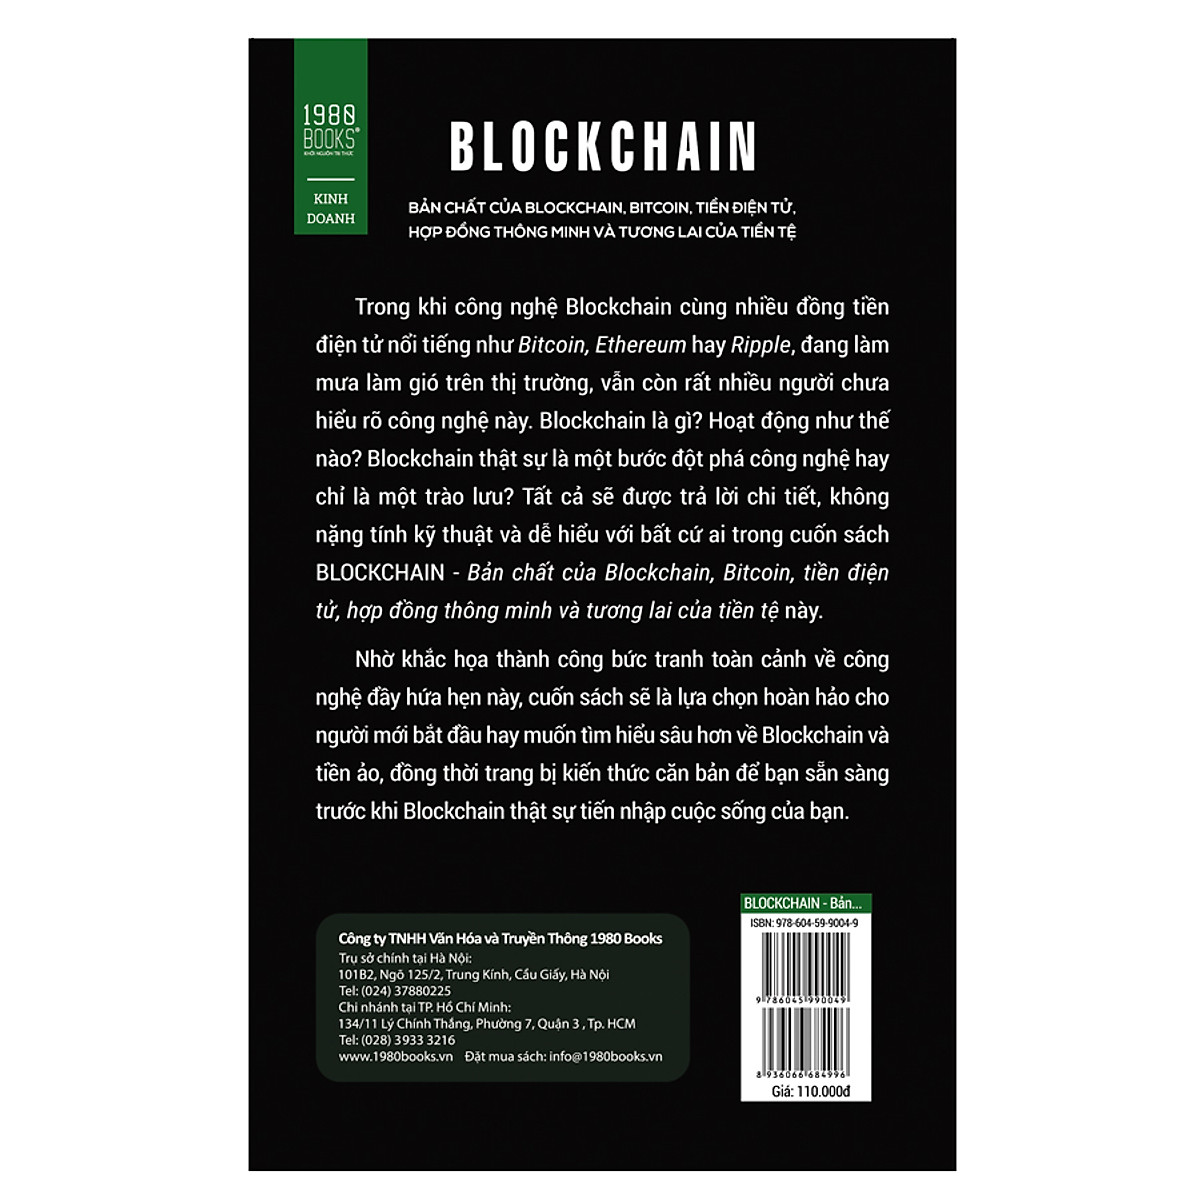 Blockchain: Bản Chất Của Blockchain, Bi t Coi n, Tiề n Điệ n Tử, Hợp Đồng Thông Minh Và Tương Lai Của Tiền Tệ